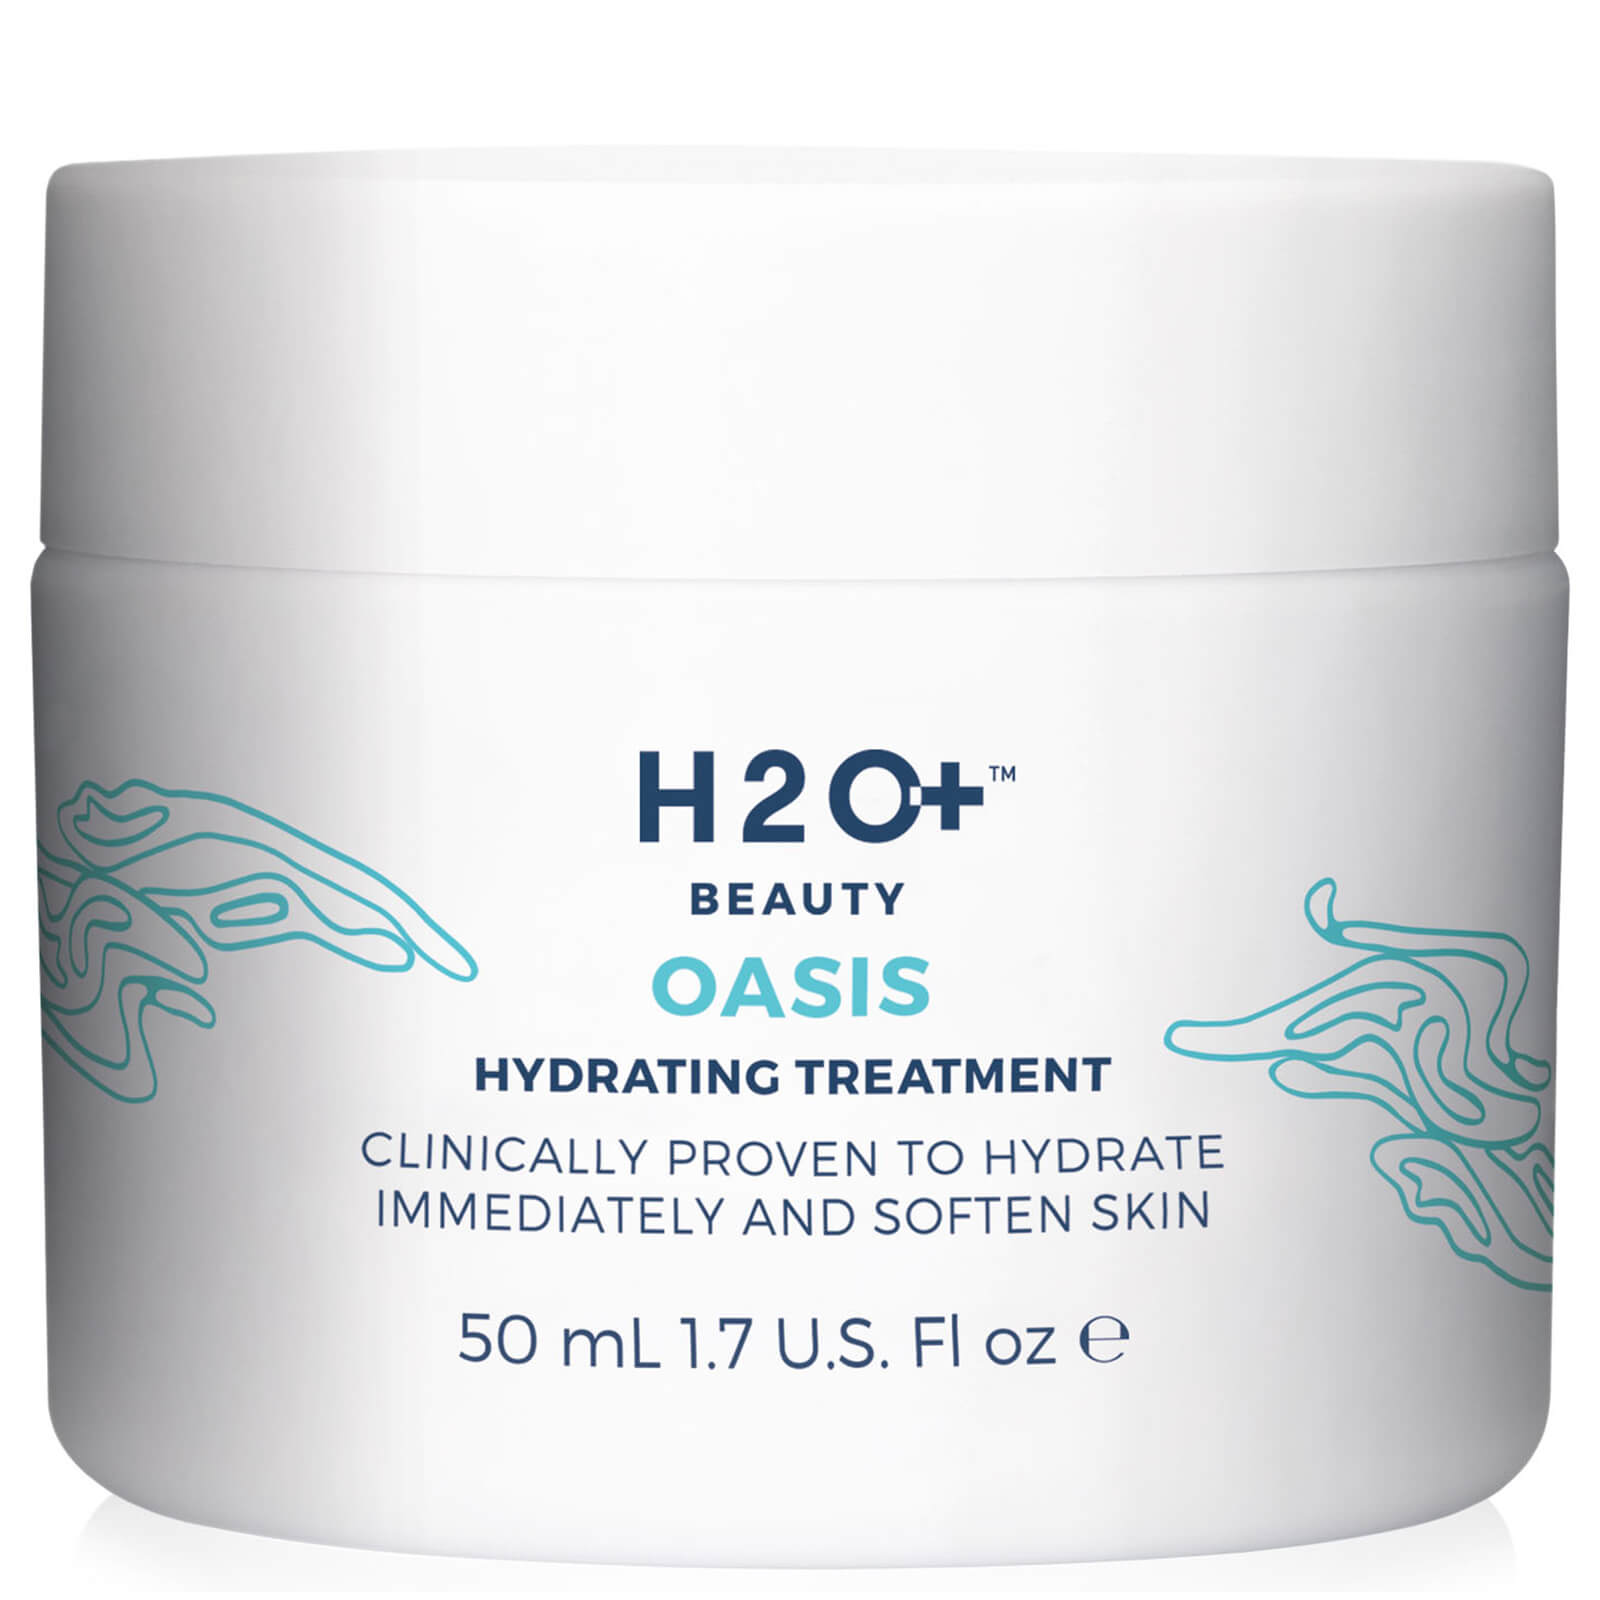 Увлажняющий крем. Крем h2o+ Beauty. Крем Hydrating Oasis Cream. Oasis Hydrating treatment. Enl Oasis крем Hydrating Oasis Cream.